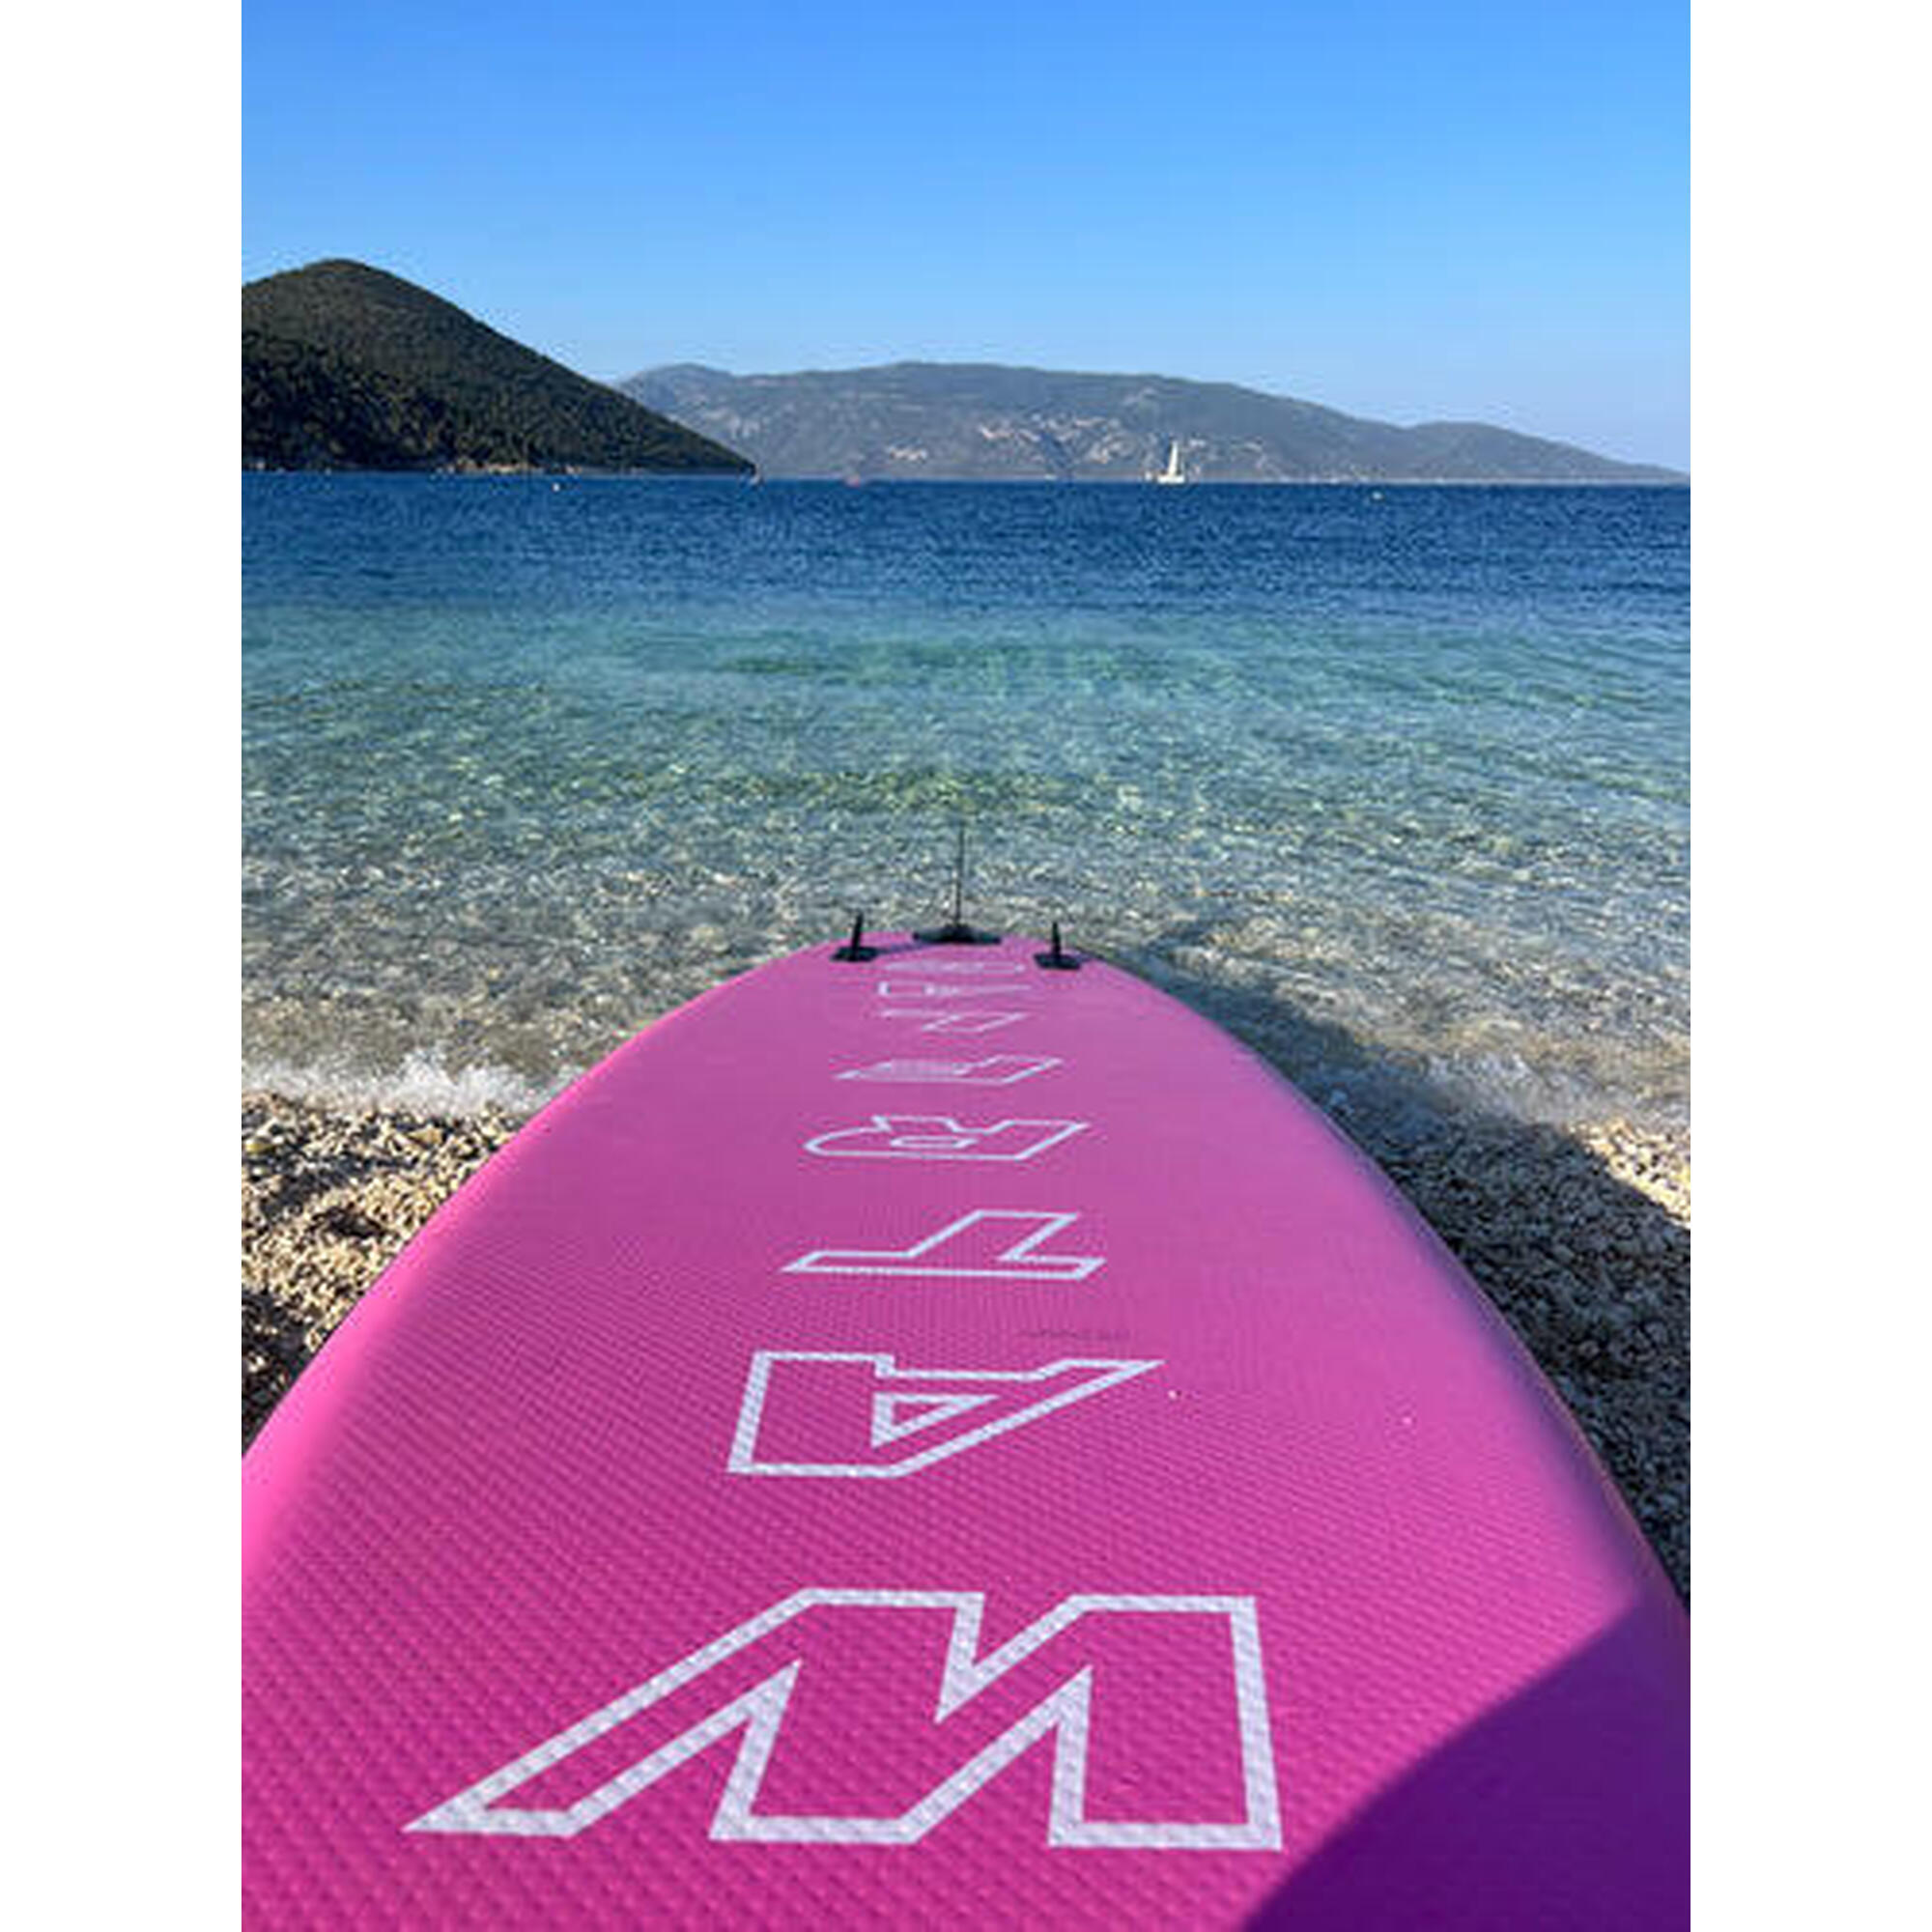 Aufblasbares SUP Board Glide-Pink 10'6", Premium Qualität, 320 cm, SET